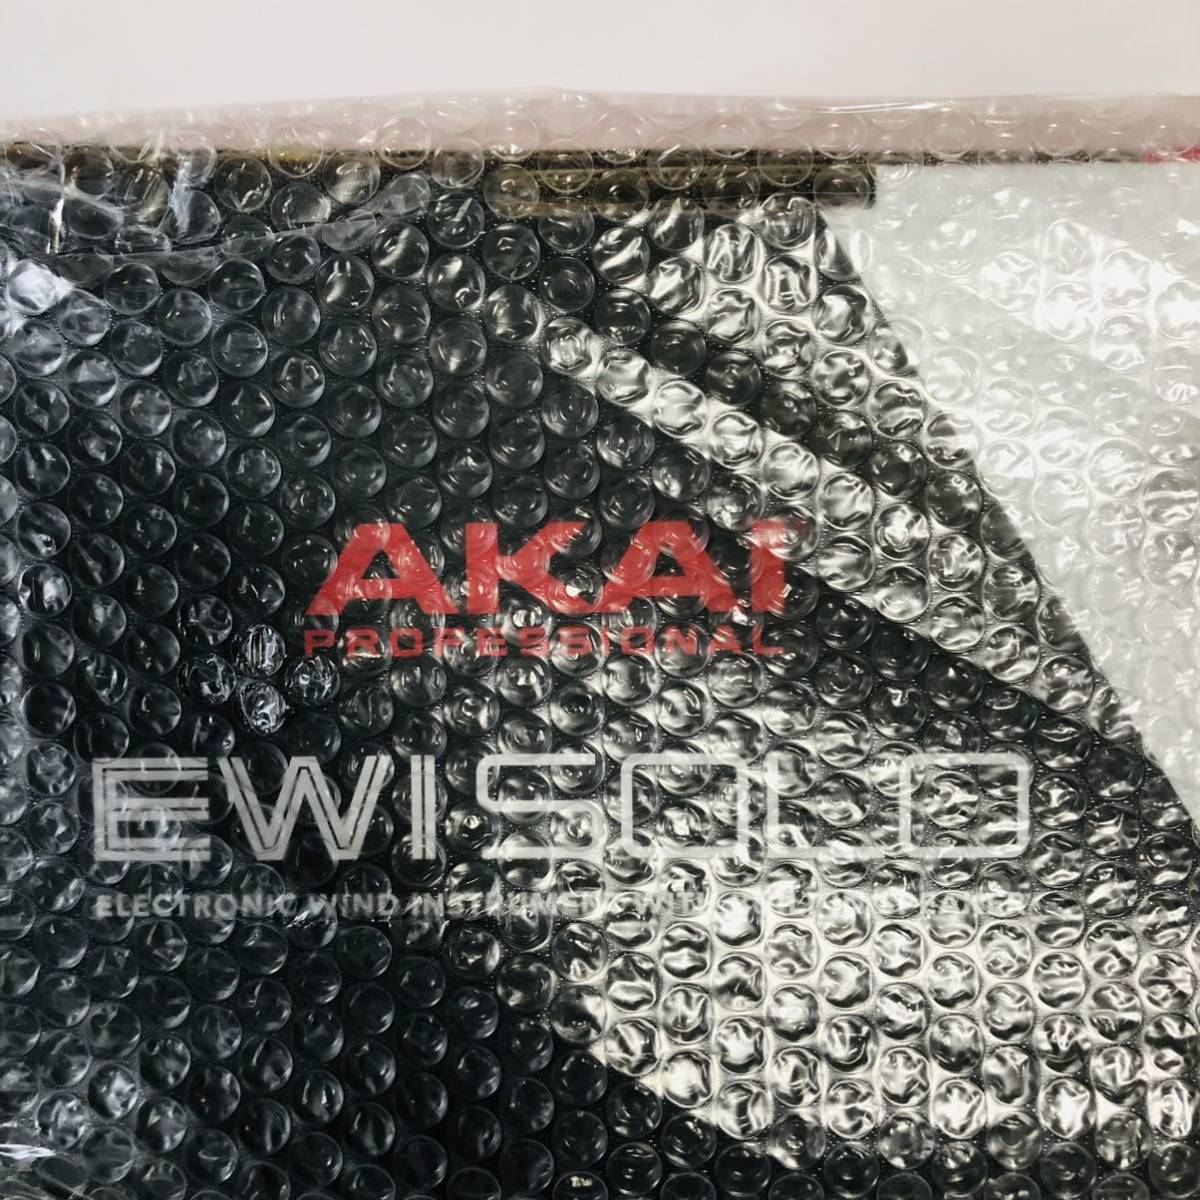  нераспечатанный новый товар * Akai Professional EWI Solo